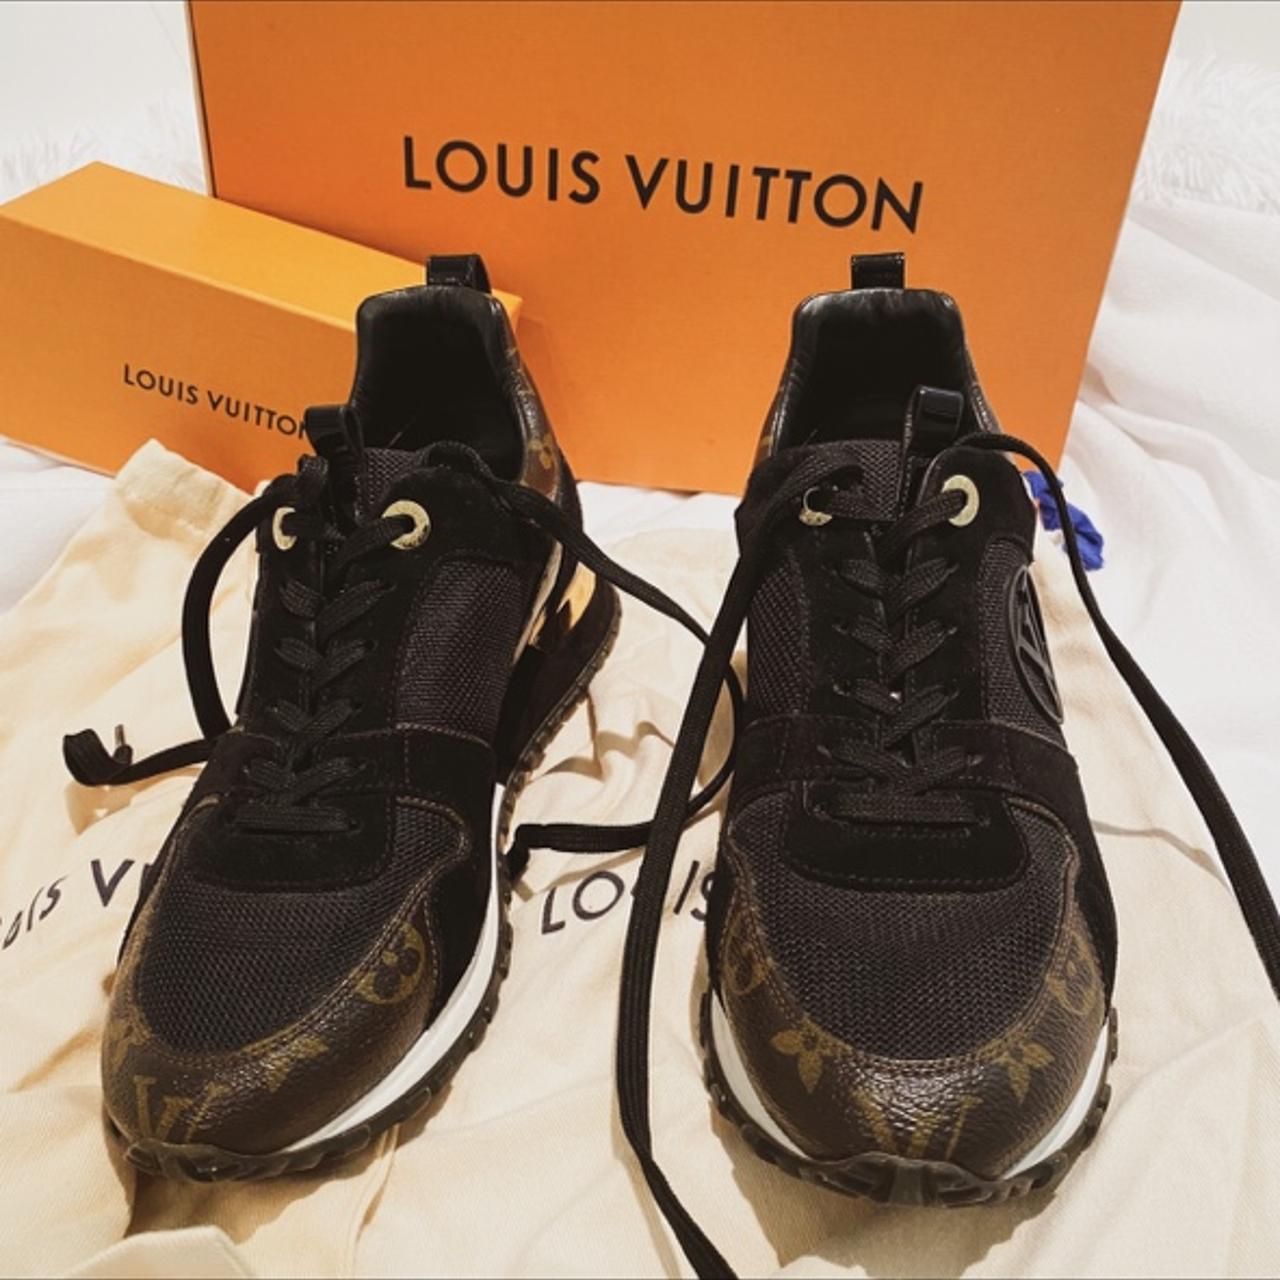 Authentic Louis Vuitton Unisex Shoes: Runaway Model - Depop